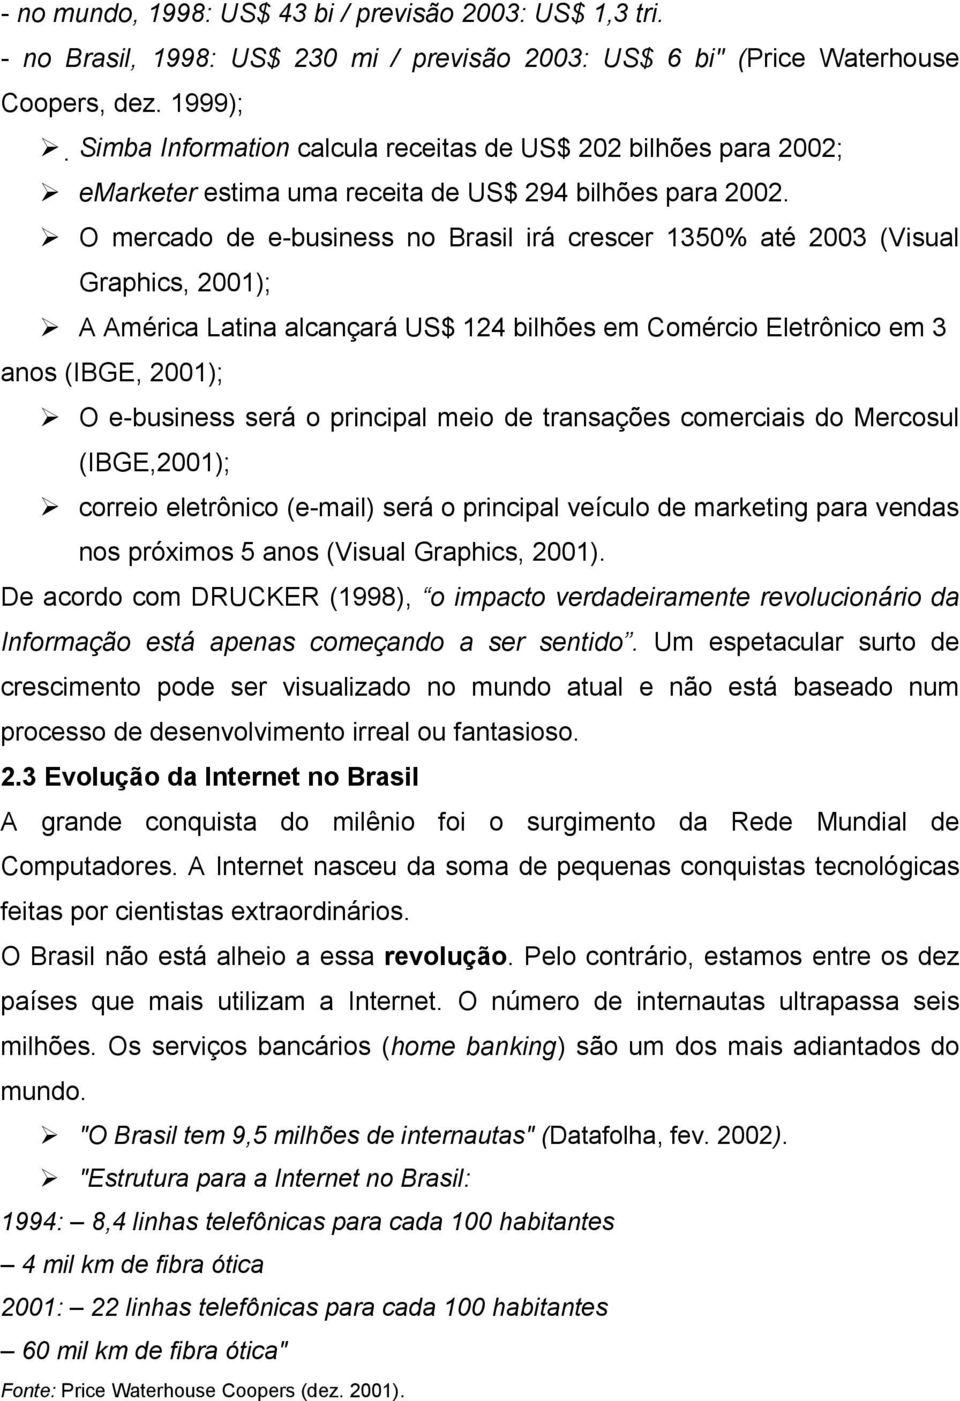 O mercado de e-business no Brasil irá crescer 1350% até 2003 (Visual Graphics, 2001); A América Latina alcançará US$ 124 bilhões em Comércio Eletrônico em 3 anos (IBGE, 2001); O e-business será o